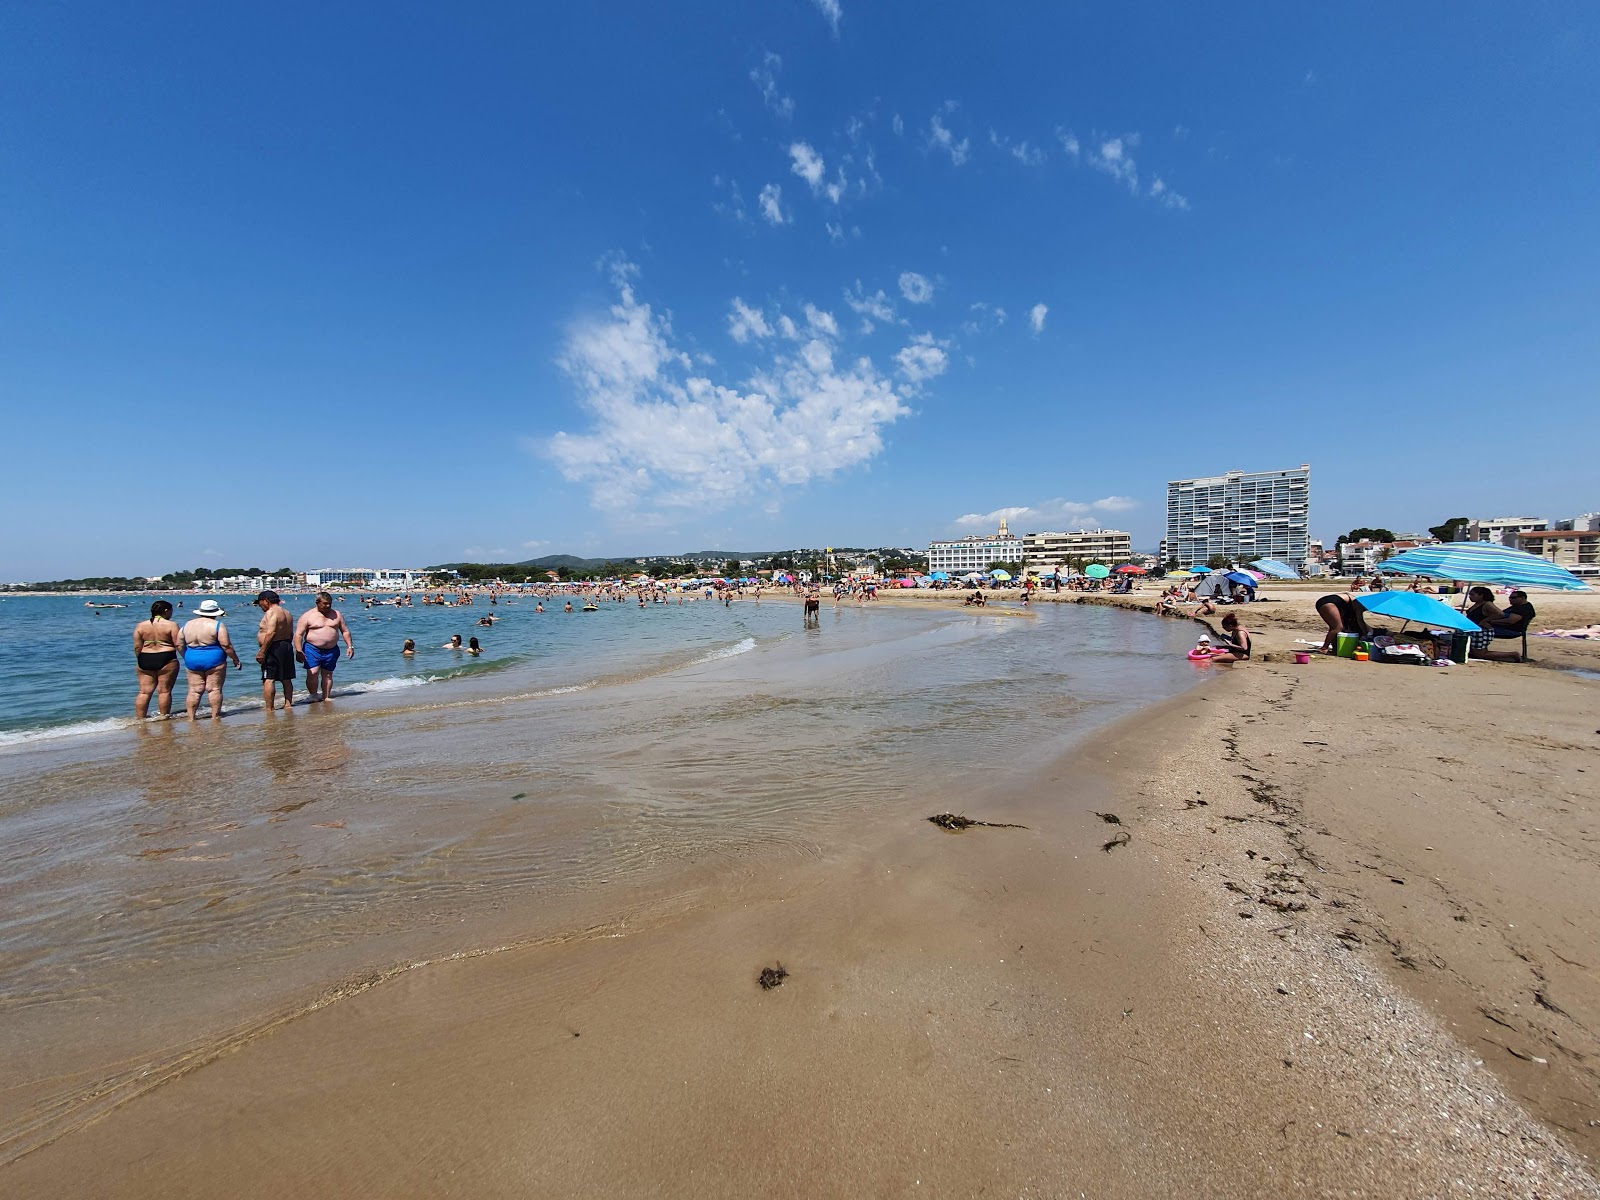 Comarruga Plajı'in fotoğrafı parlak kum yüzey ile